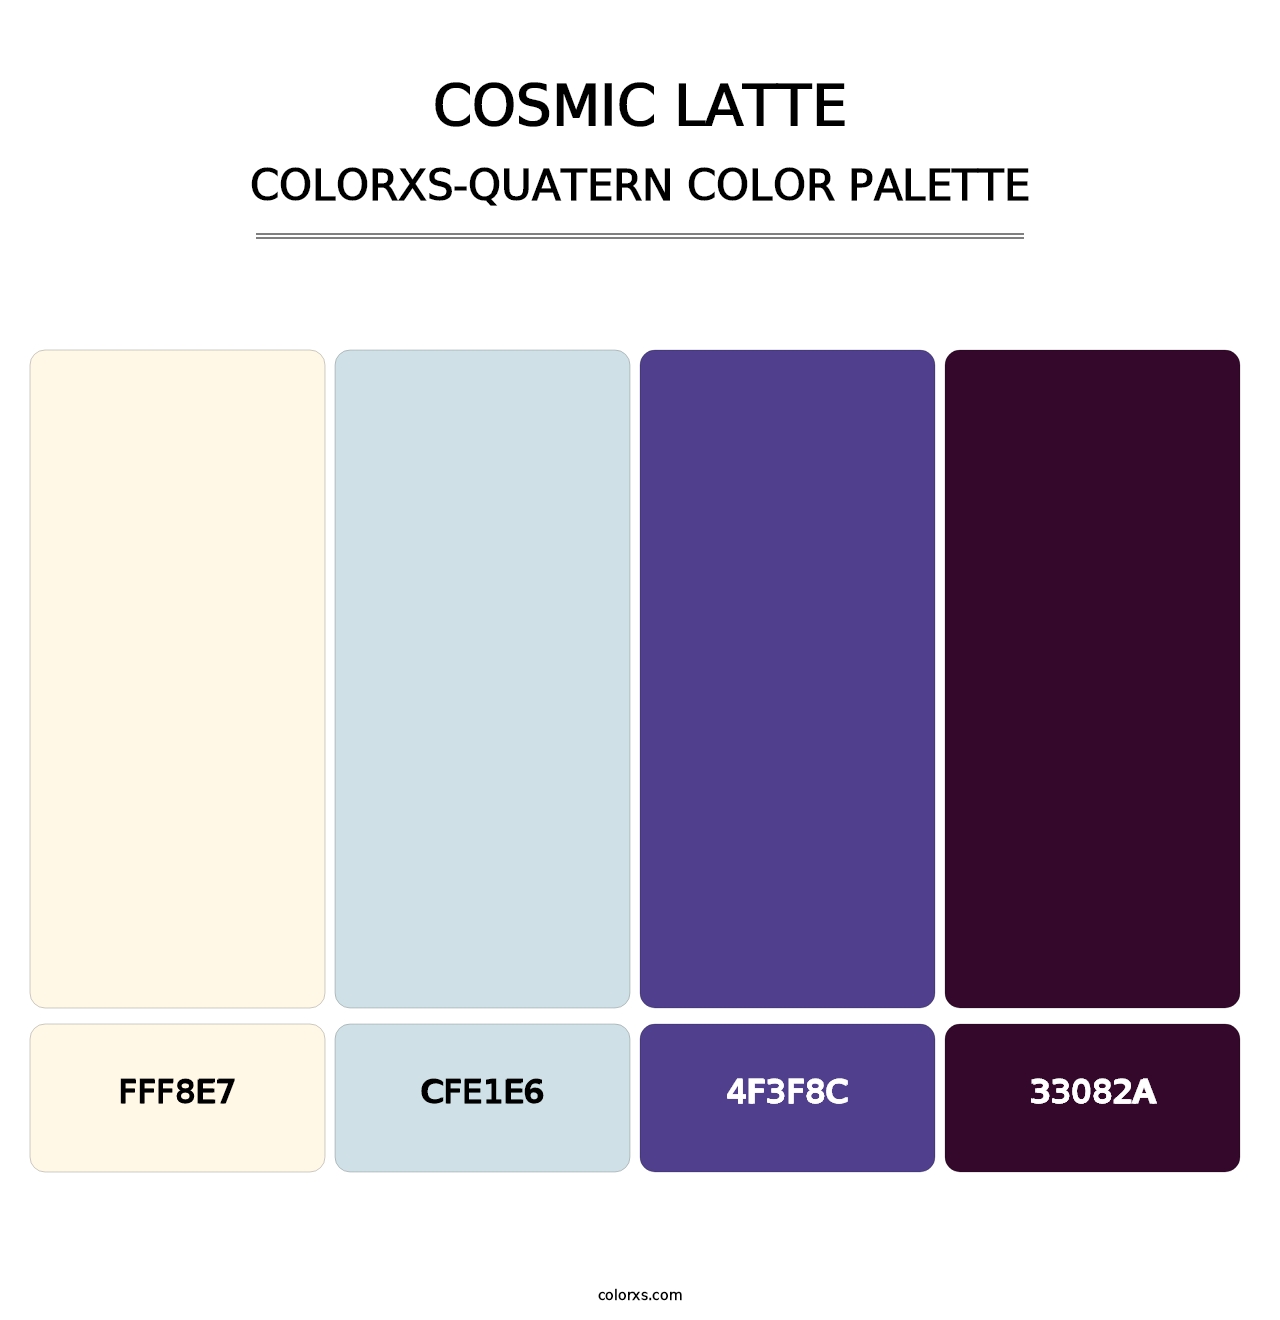 Cosmic Latte - Colorxs Quatern Palette